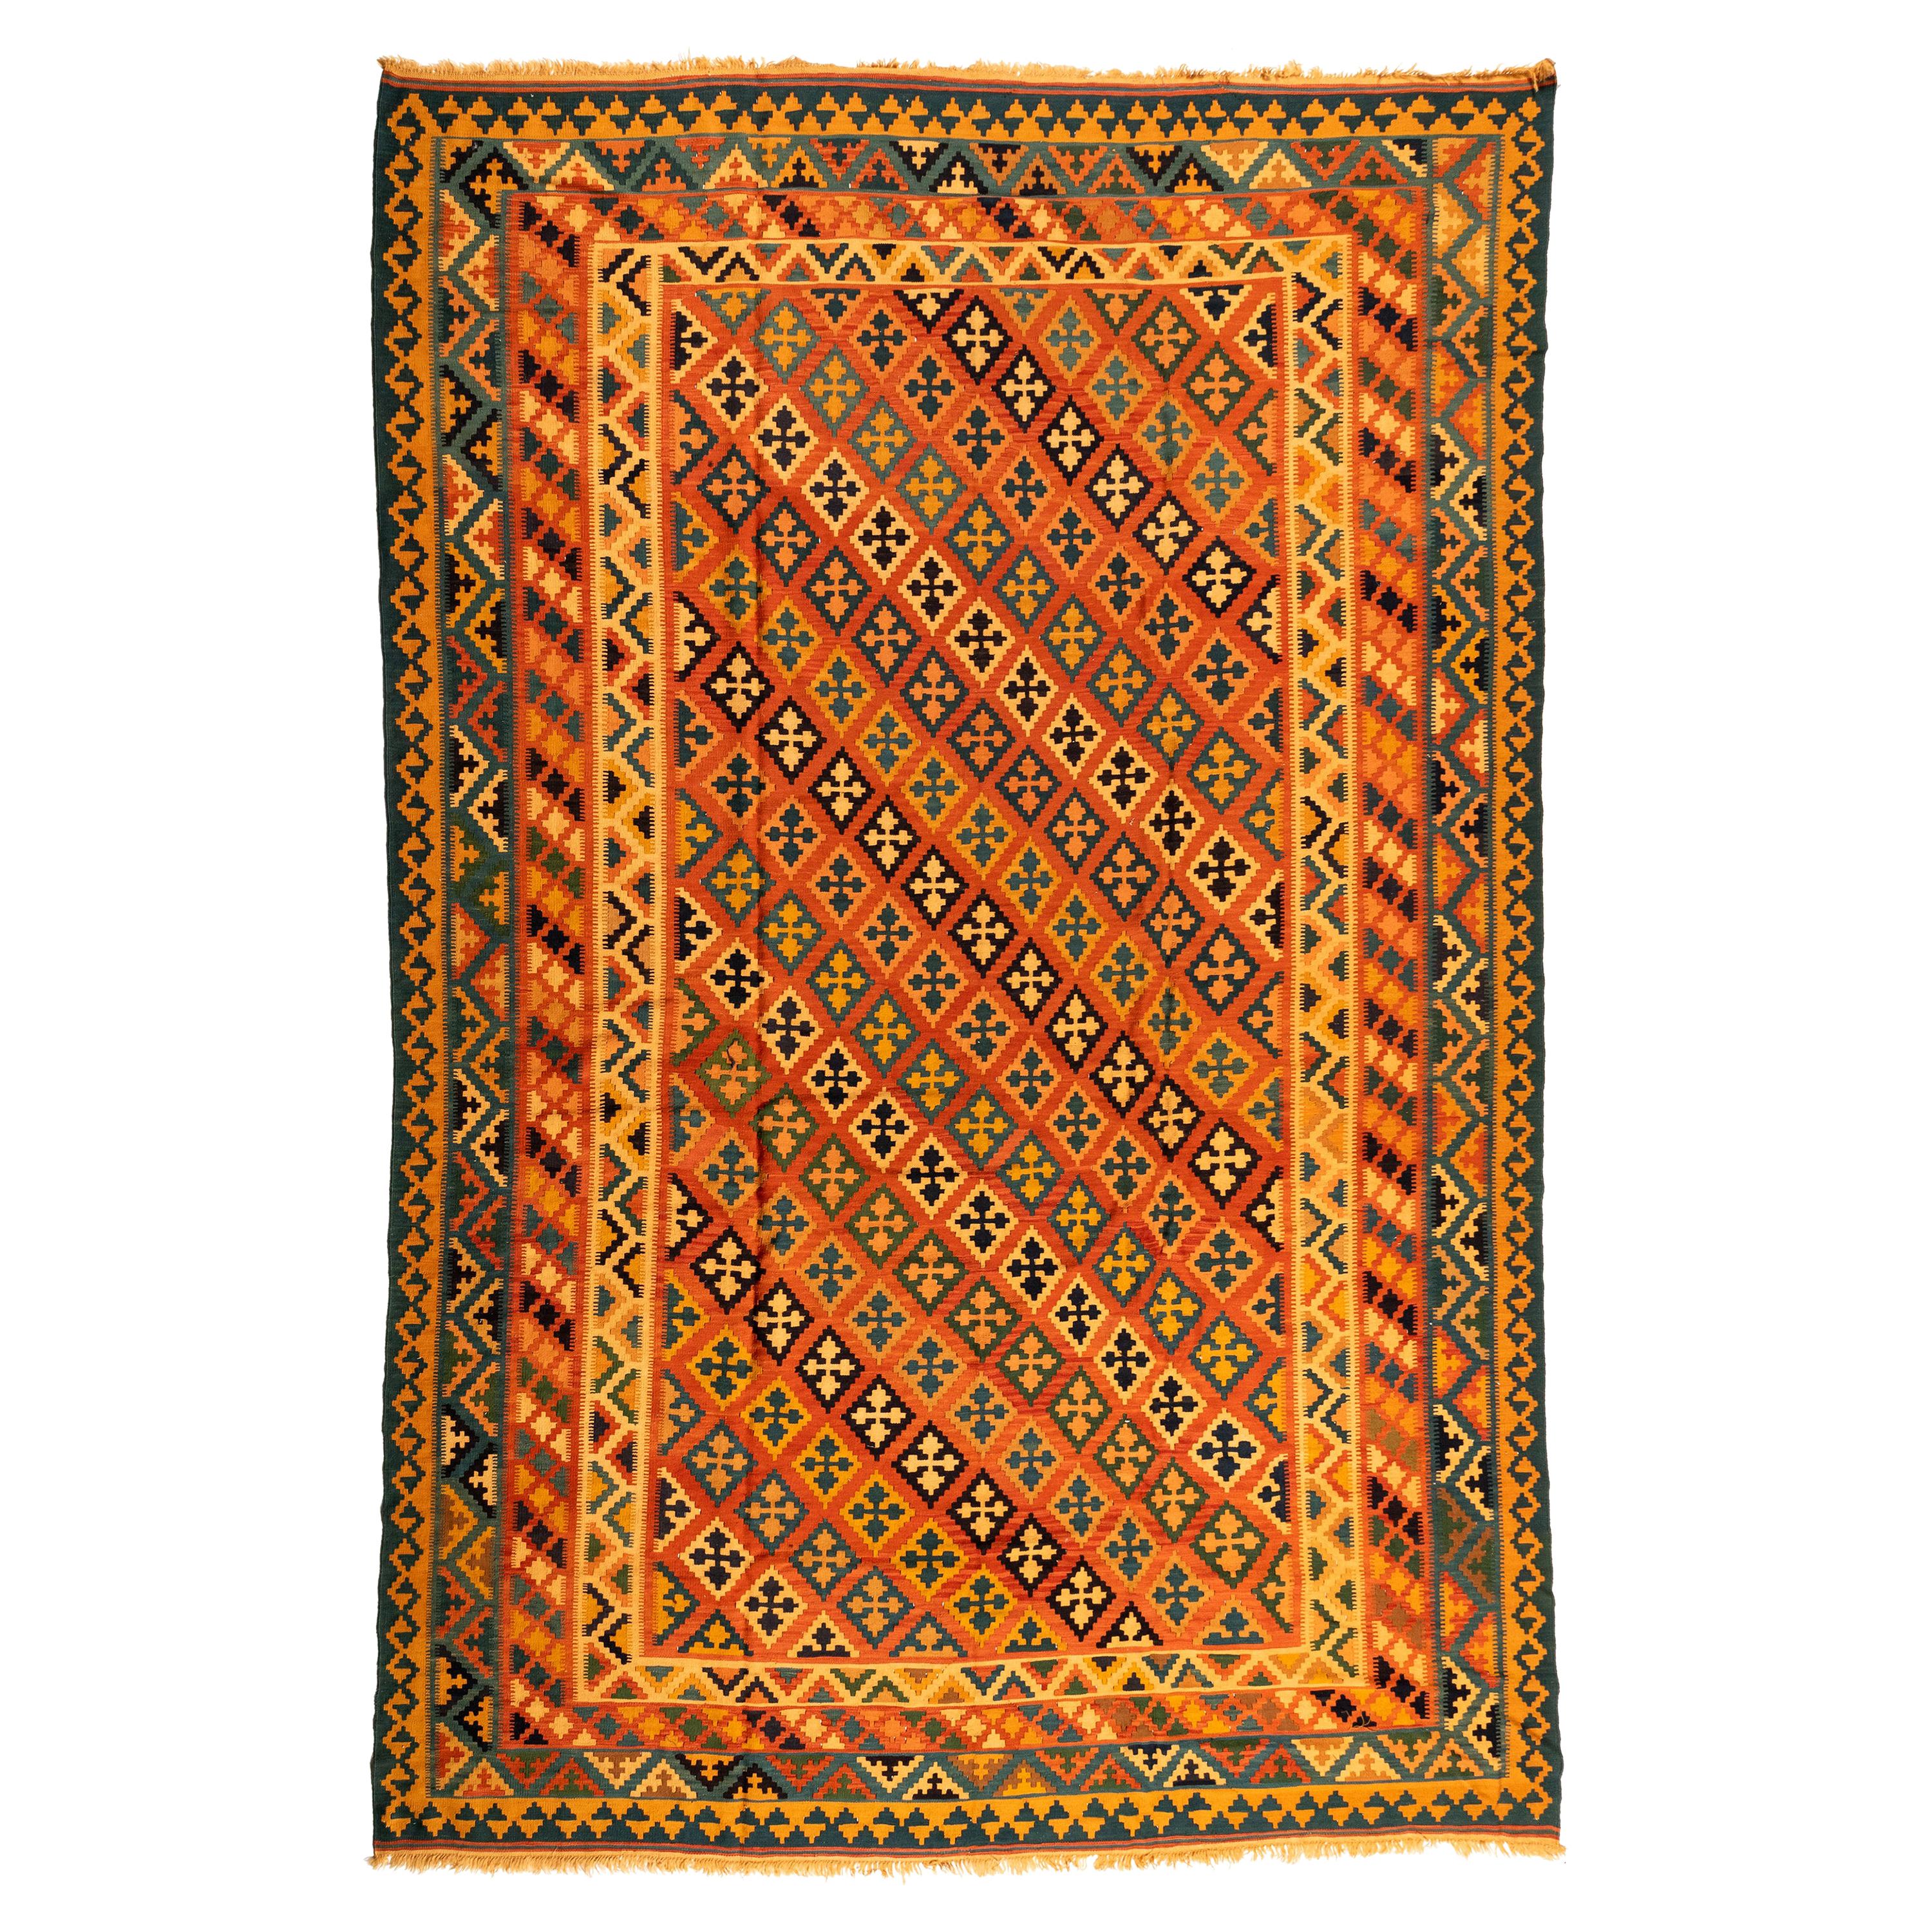 Antique Orange and Yellow Caucasian Kilim Geometric Rug, circa 1940s